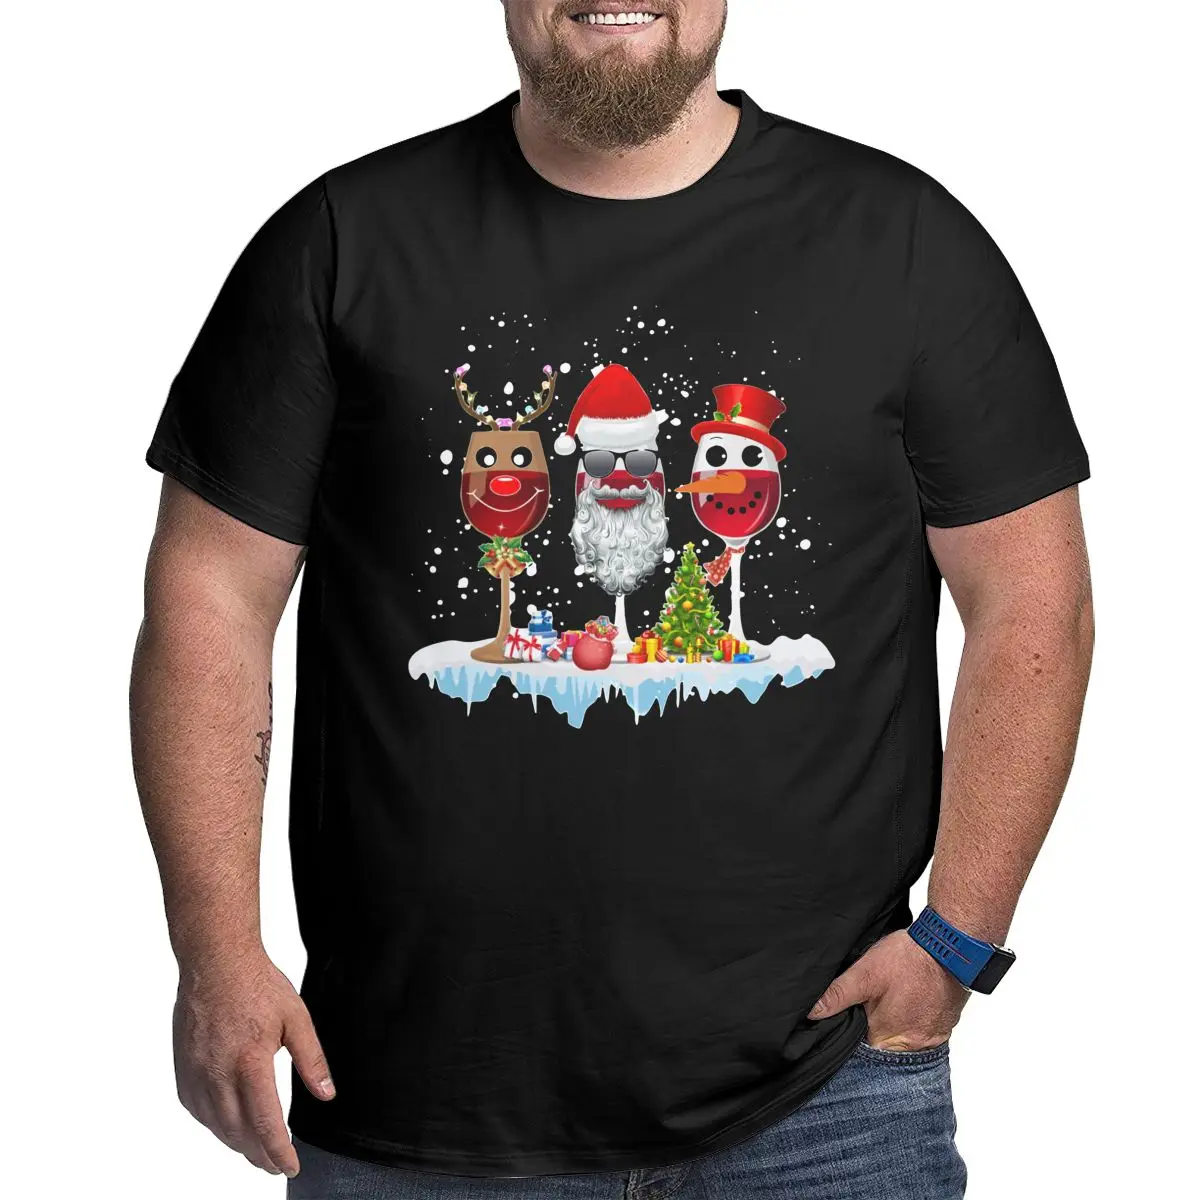 

Мужская футболка с капюшоном «три бокала красного вина», 100% хлопок, 4XL 5XL 6XL